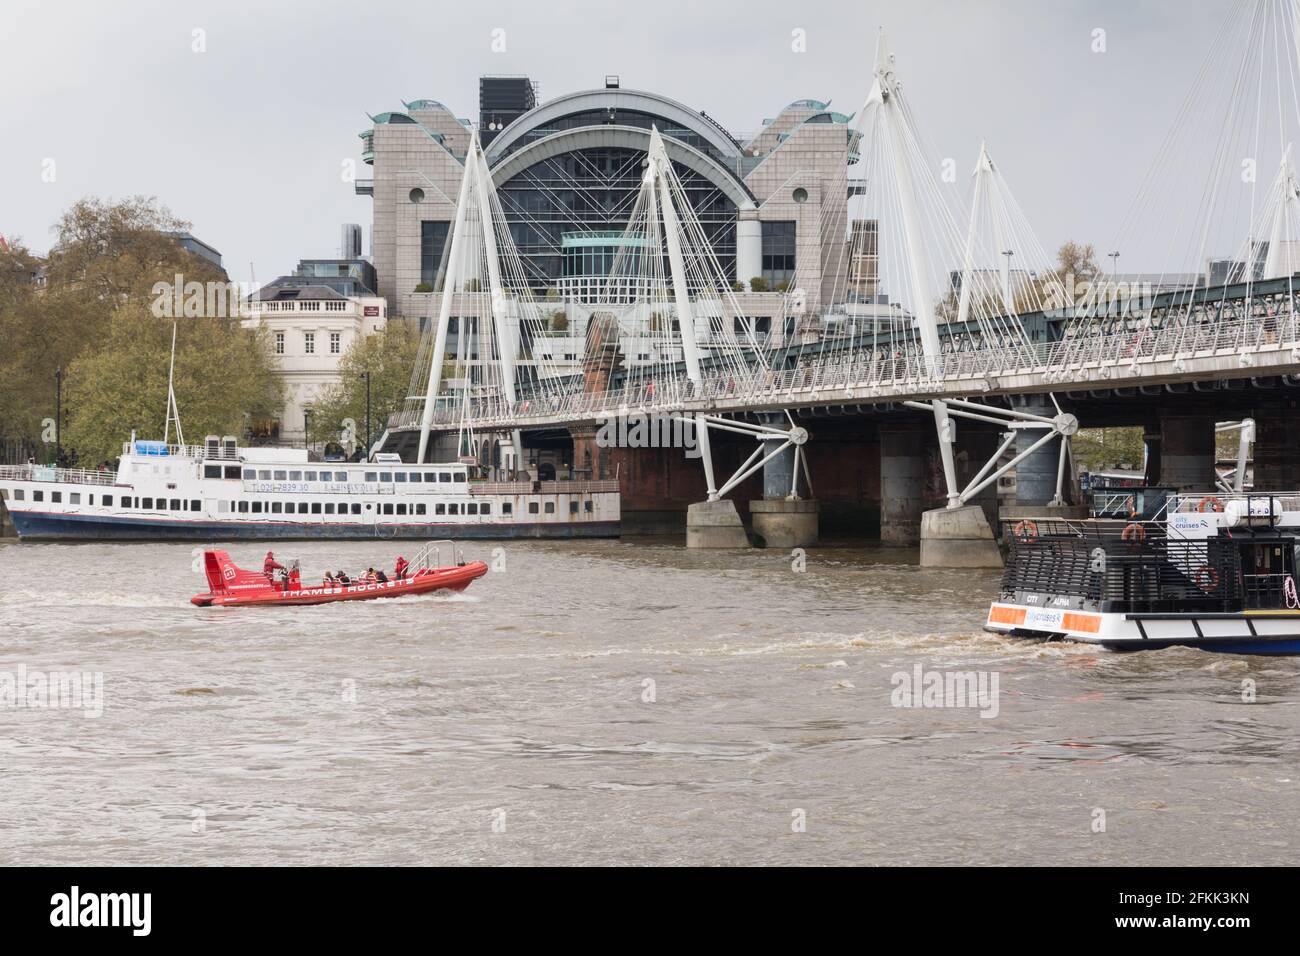 Ein Boot mit der Thames Rocket Rib fährt in der Nähe der Charing Cross Station und der Golden Jubilee Footbridge und der Hungerford Bridge, Waterloo, London, England, Großbritannien Stockfoto